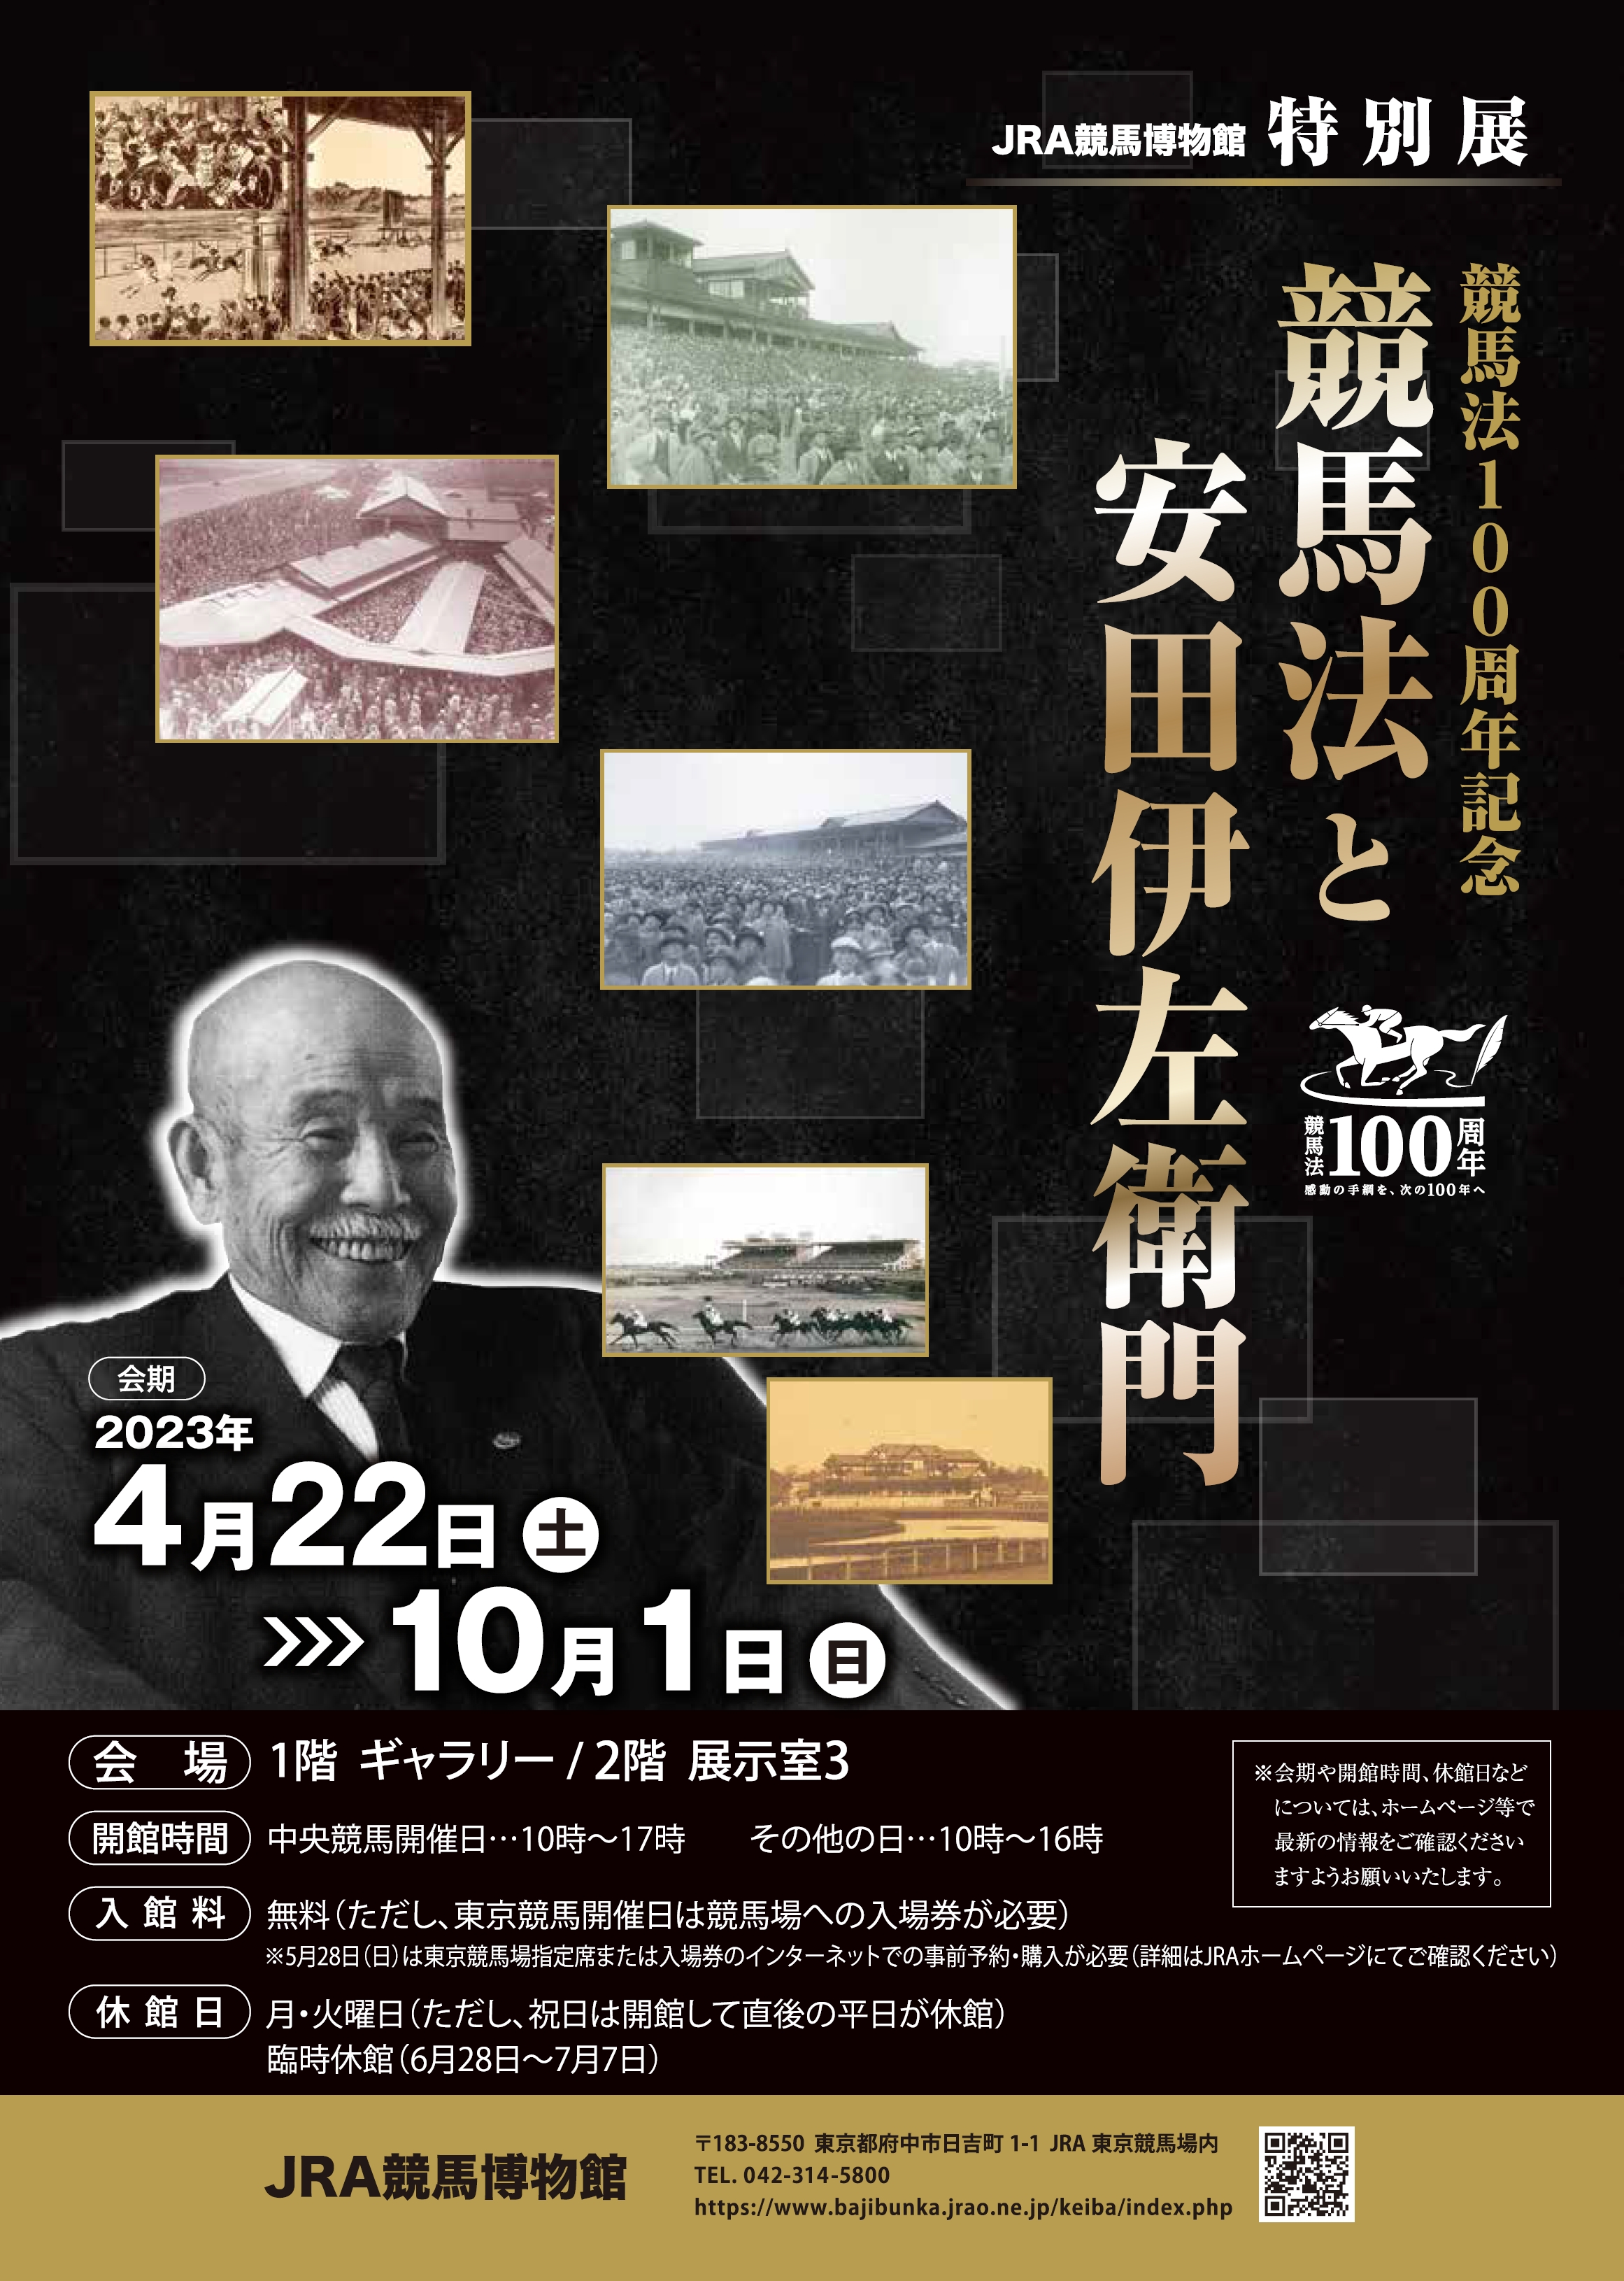 特別展「競馬法100周年記念 競馬法と安田伊左衛門」 JRA競馬博物館